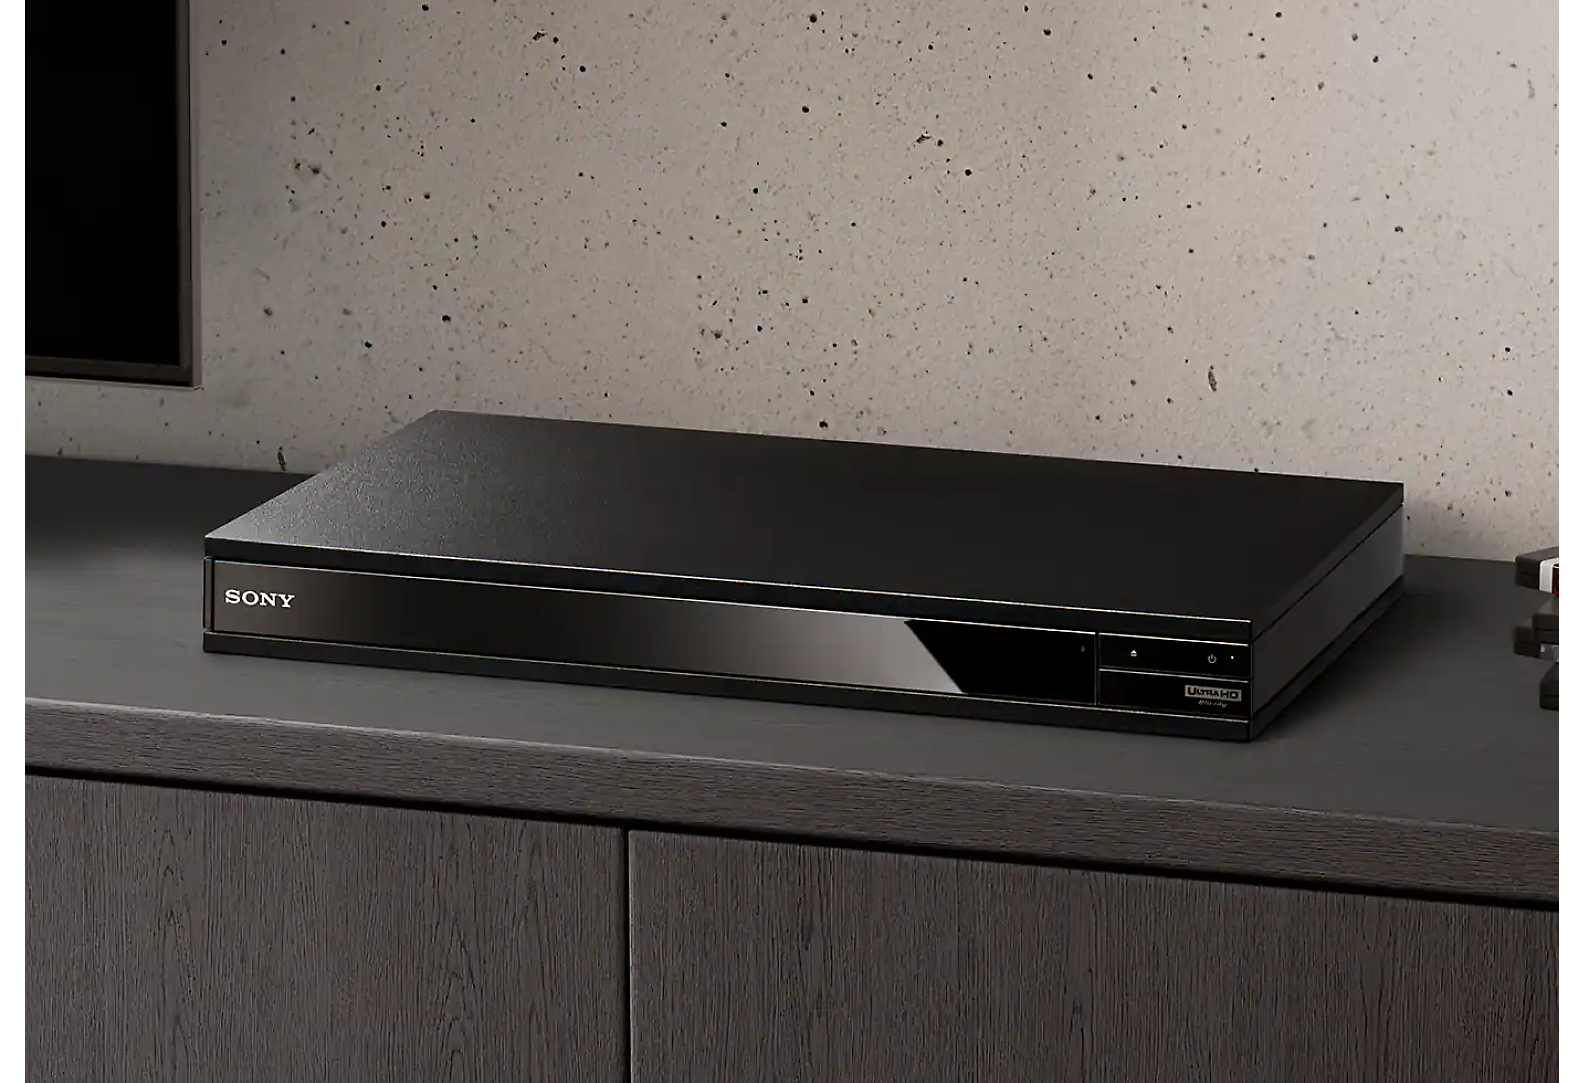 Черный проигрыватель дисков Blu-ray Disc, виднеющийся между стопками дисков Blu-ray Disc и черным телевизором.